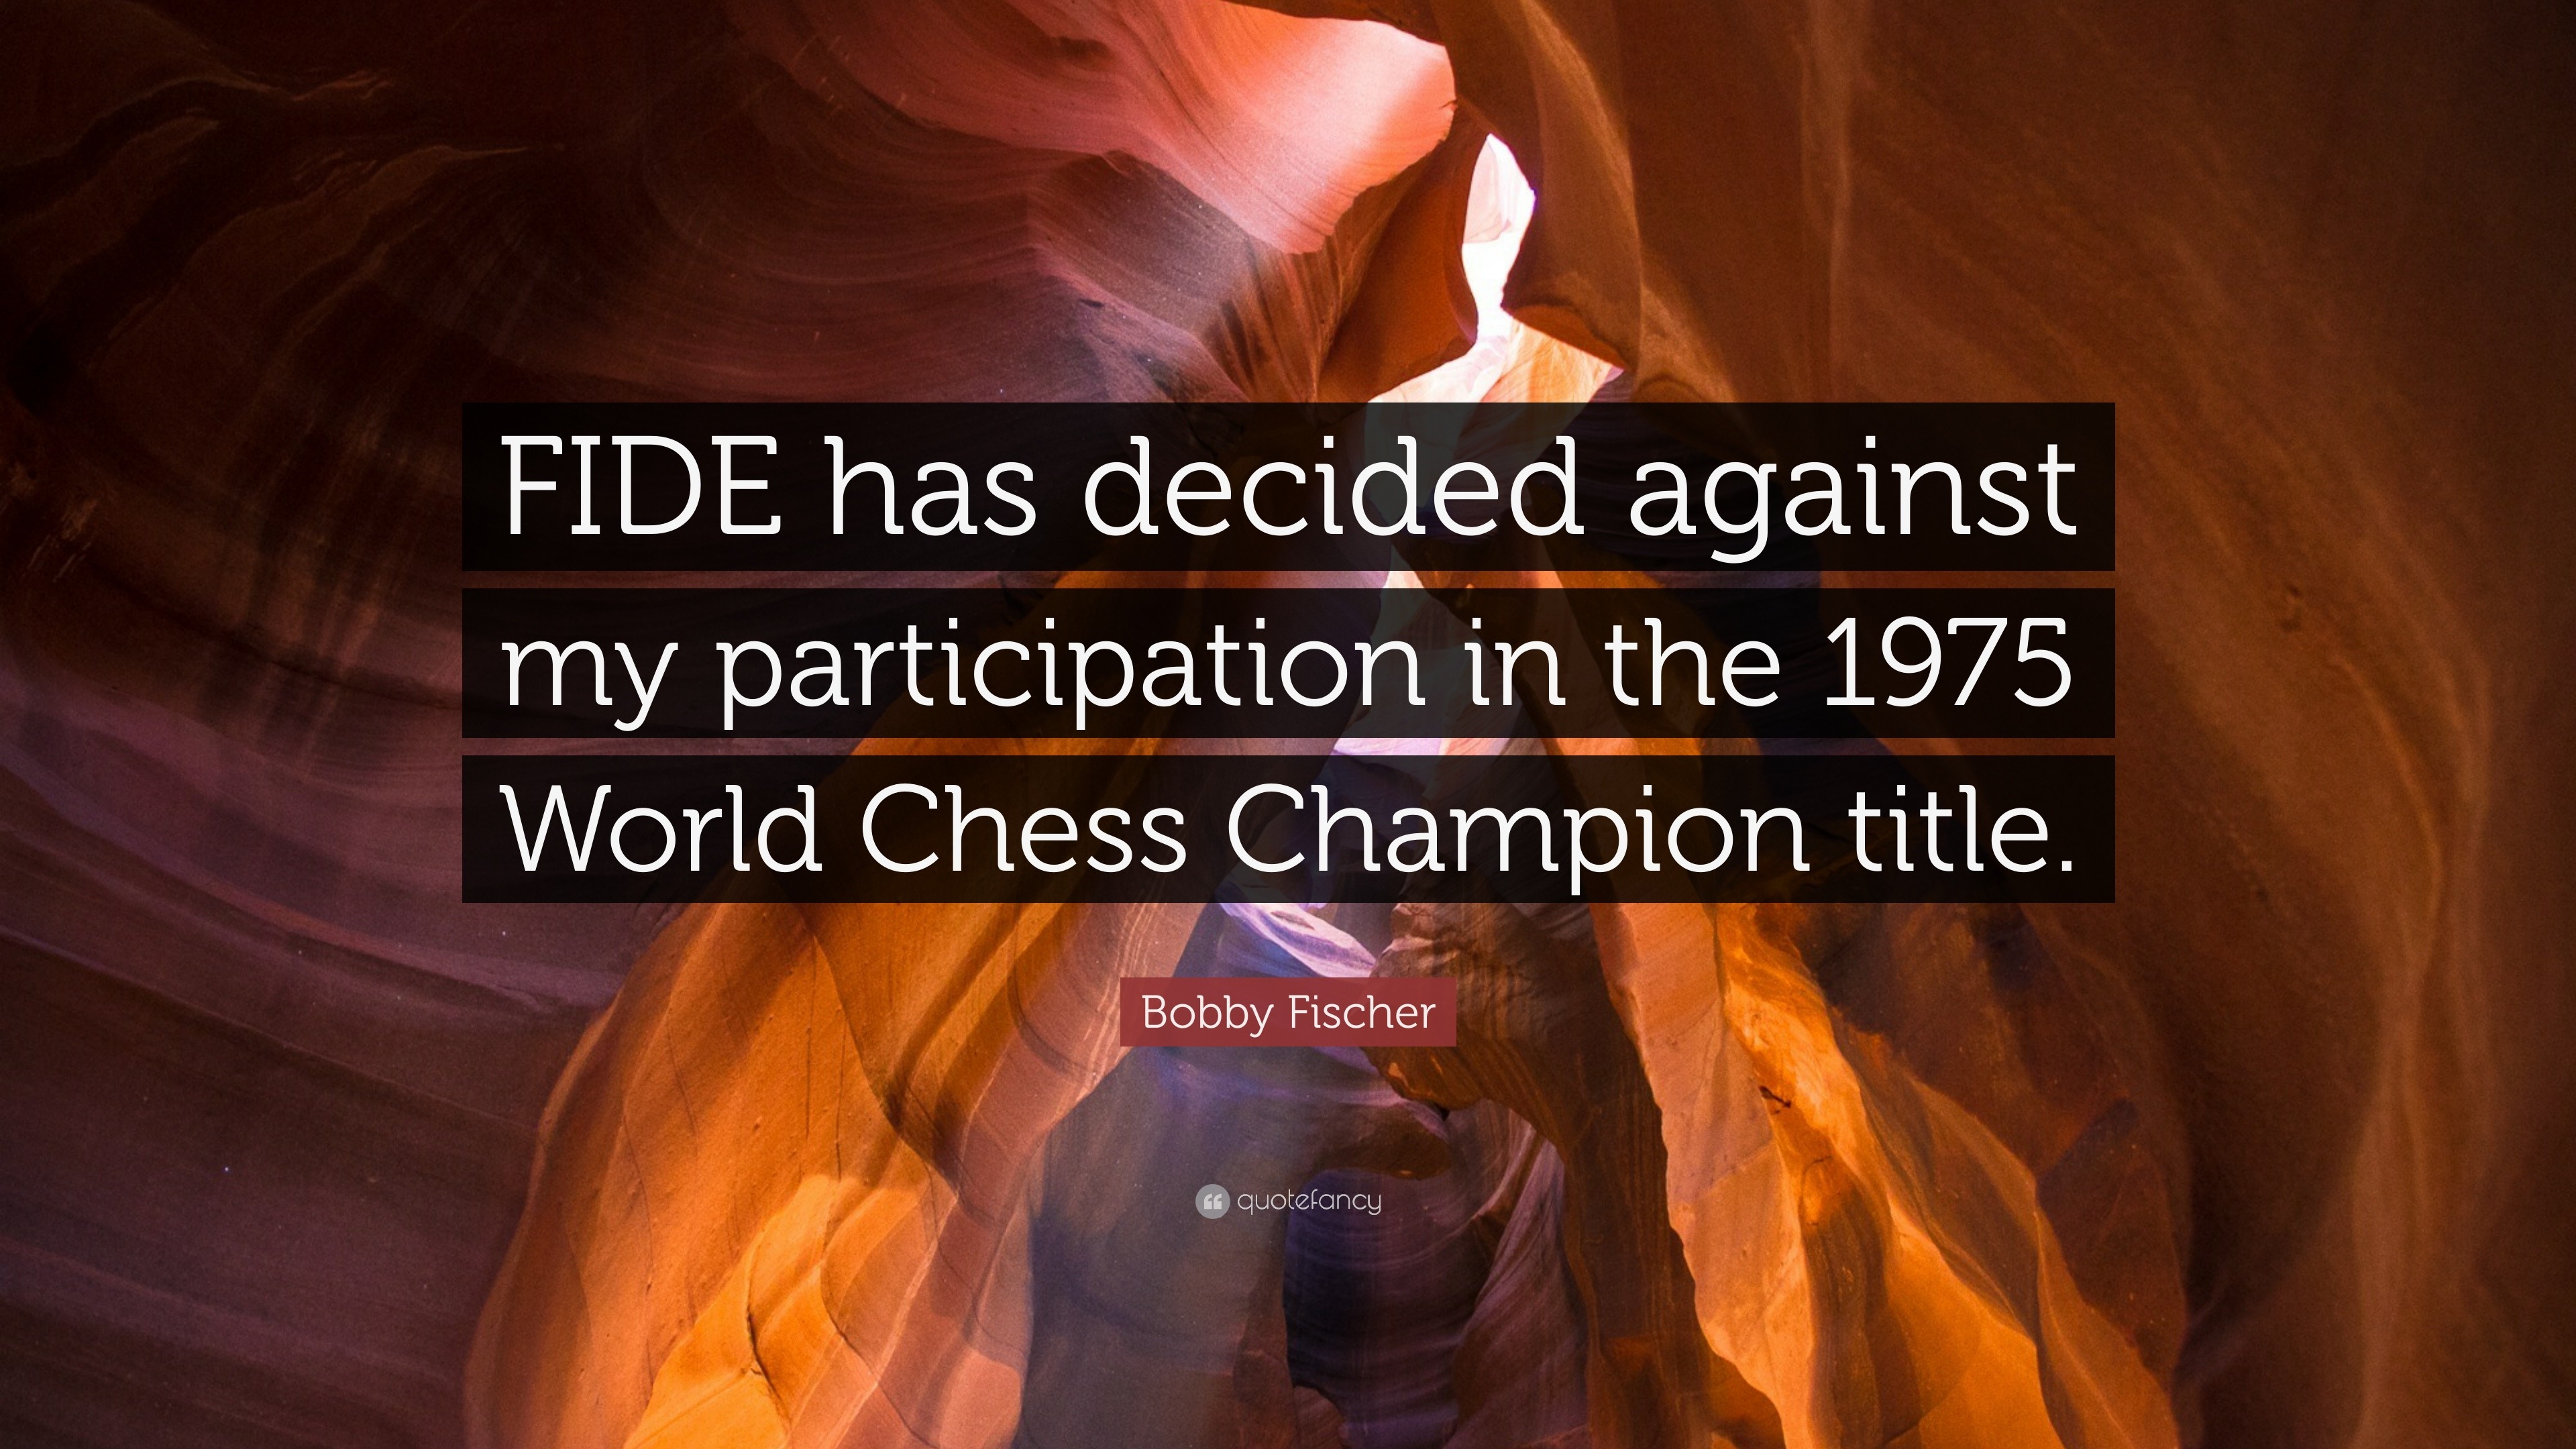 FISCHER VS. FIDE